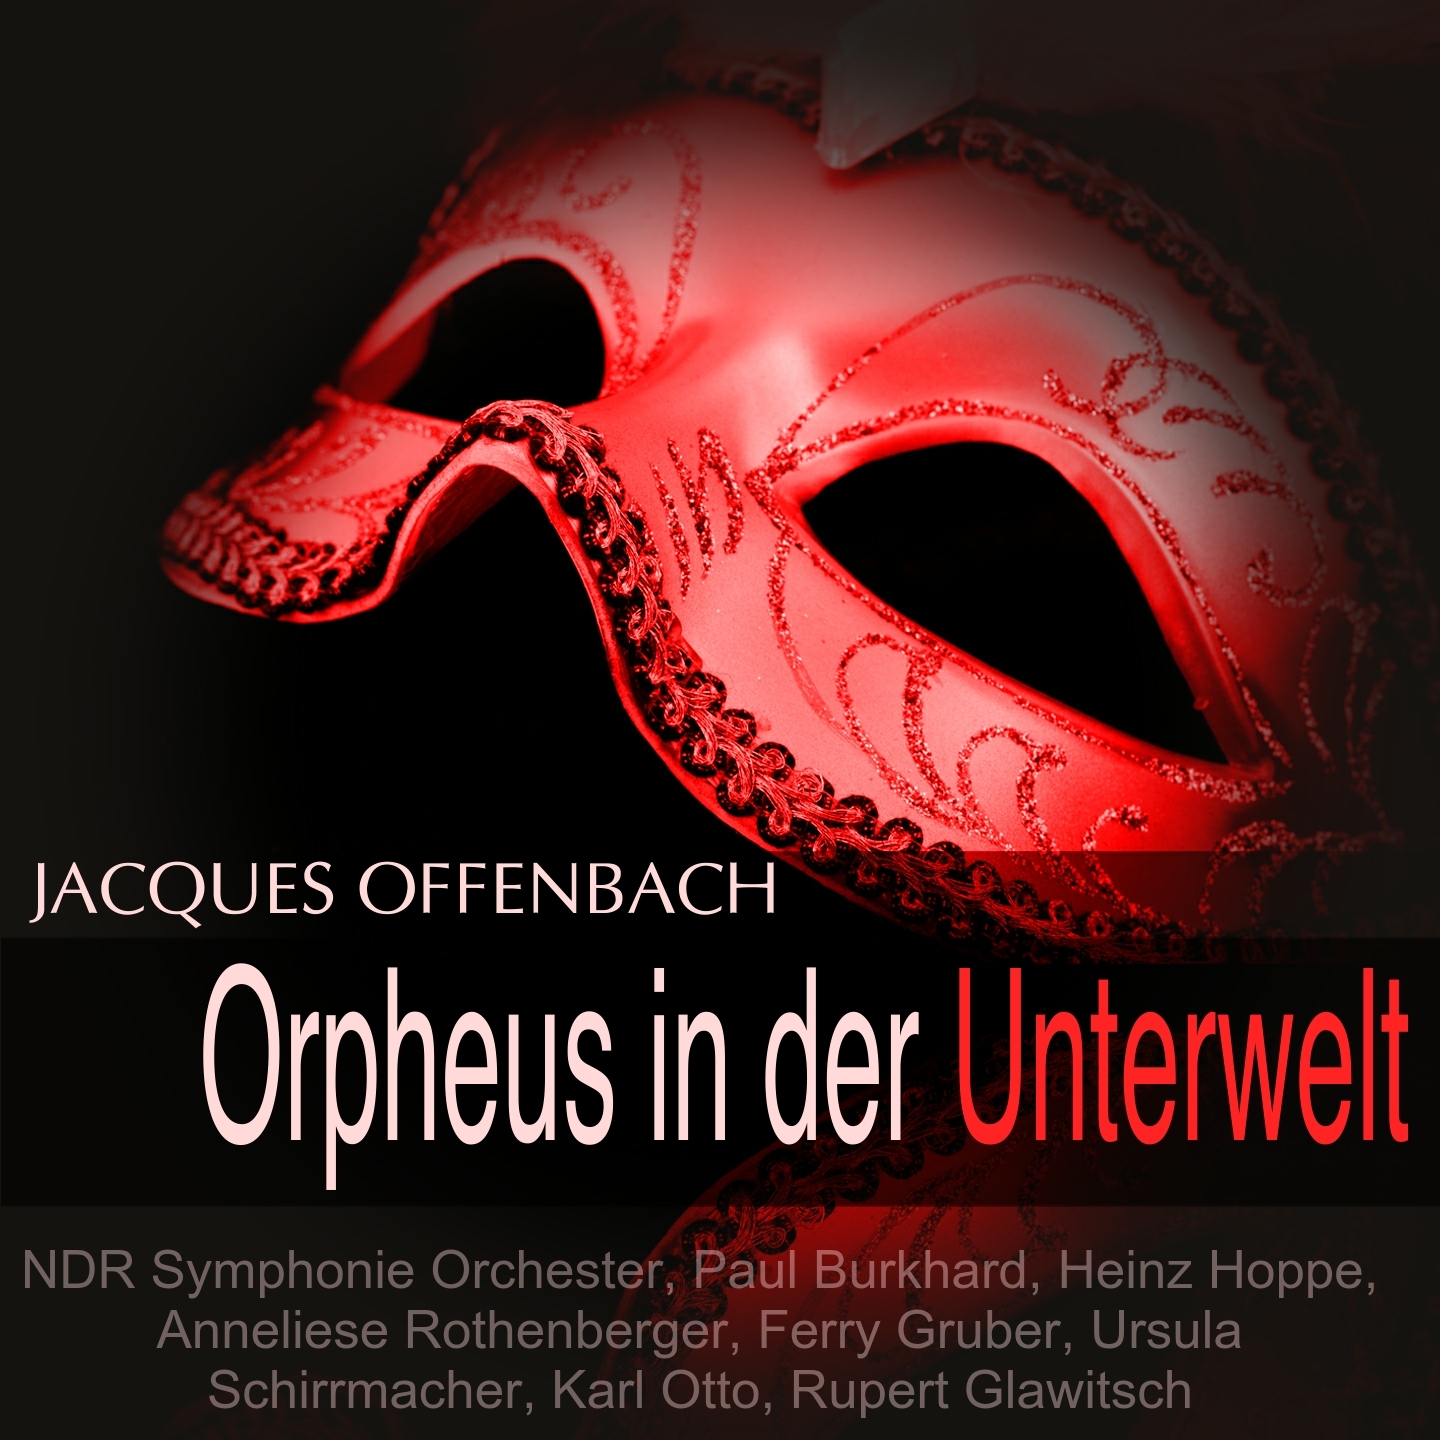 Orpheus in der Unterwelt: Dialog 11 ffentliche Meinung, Ensemble